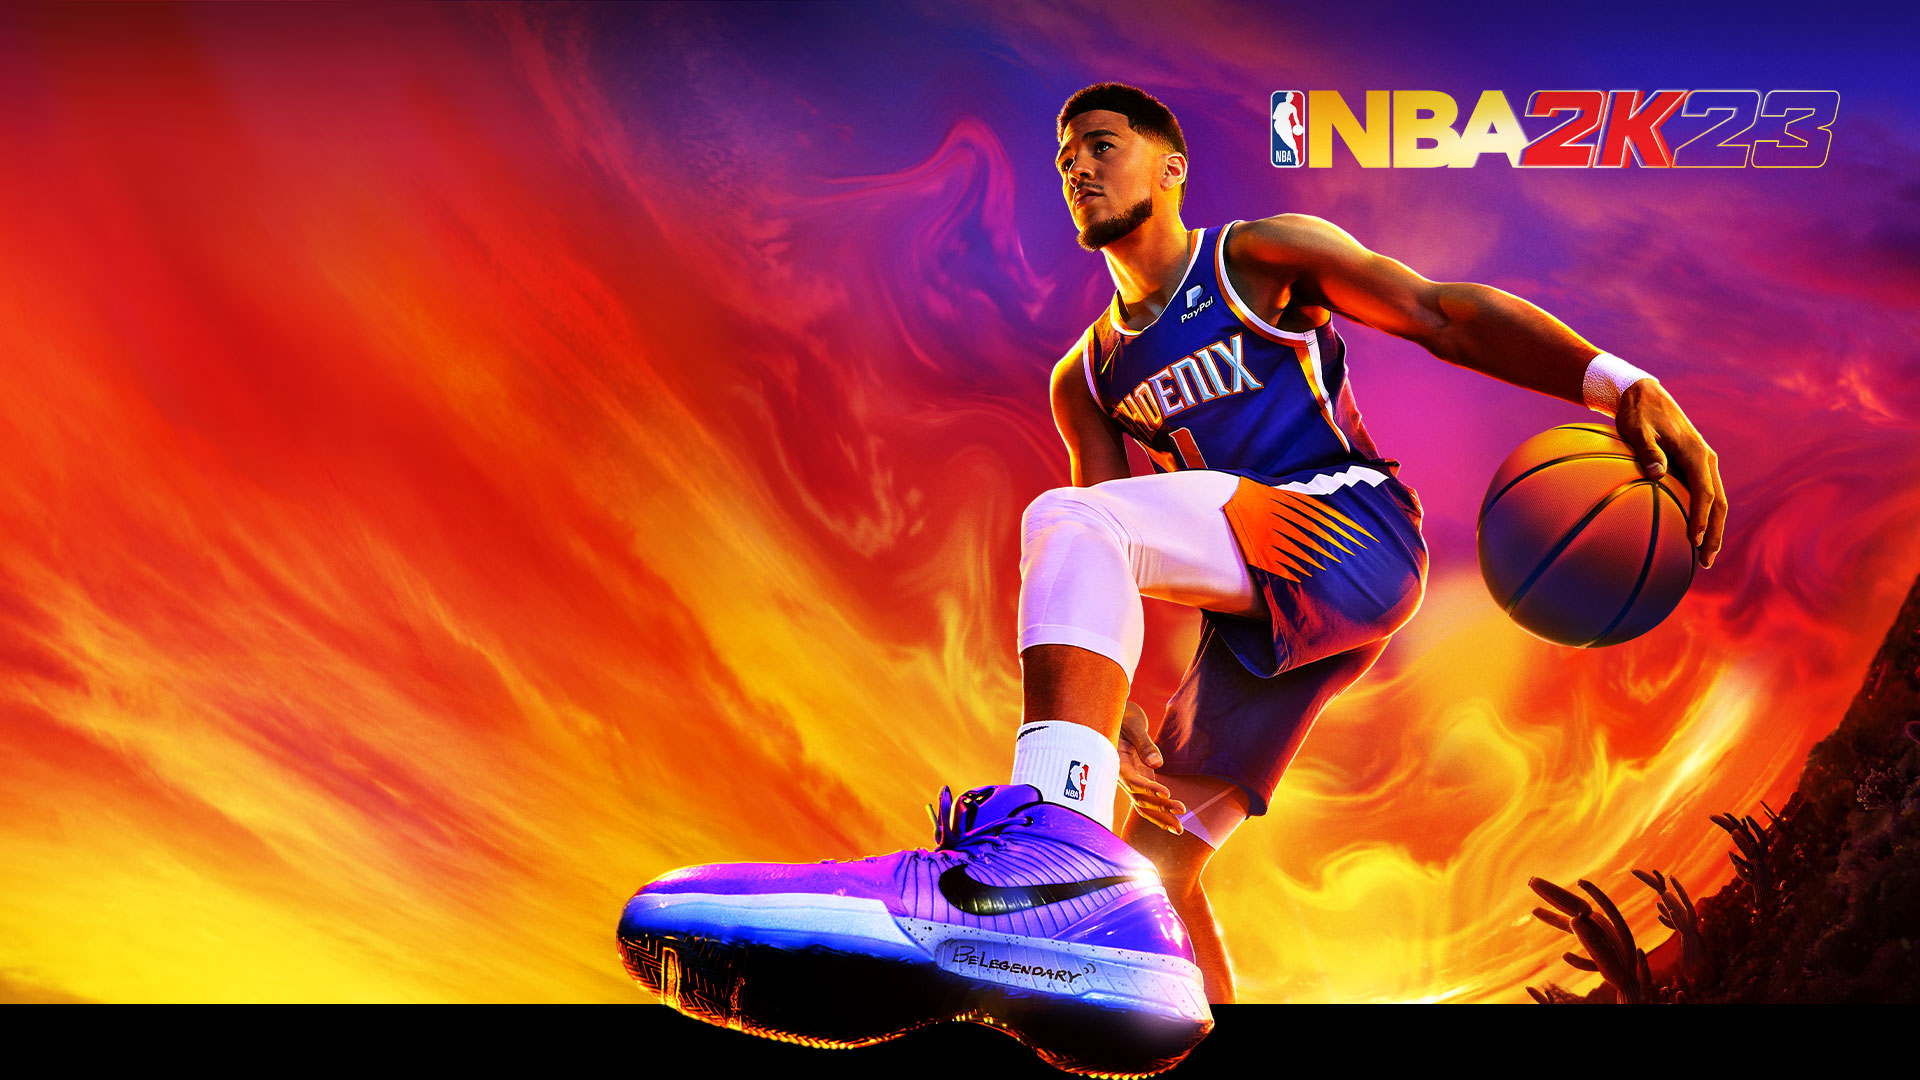 NBA 2K23, Devin Booker, número 1 de los Phoenix Suns, controla una pelota de baloncesto en un desierto bajo un colorido cielo.